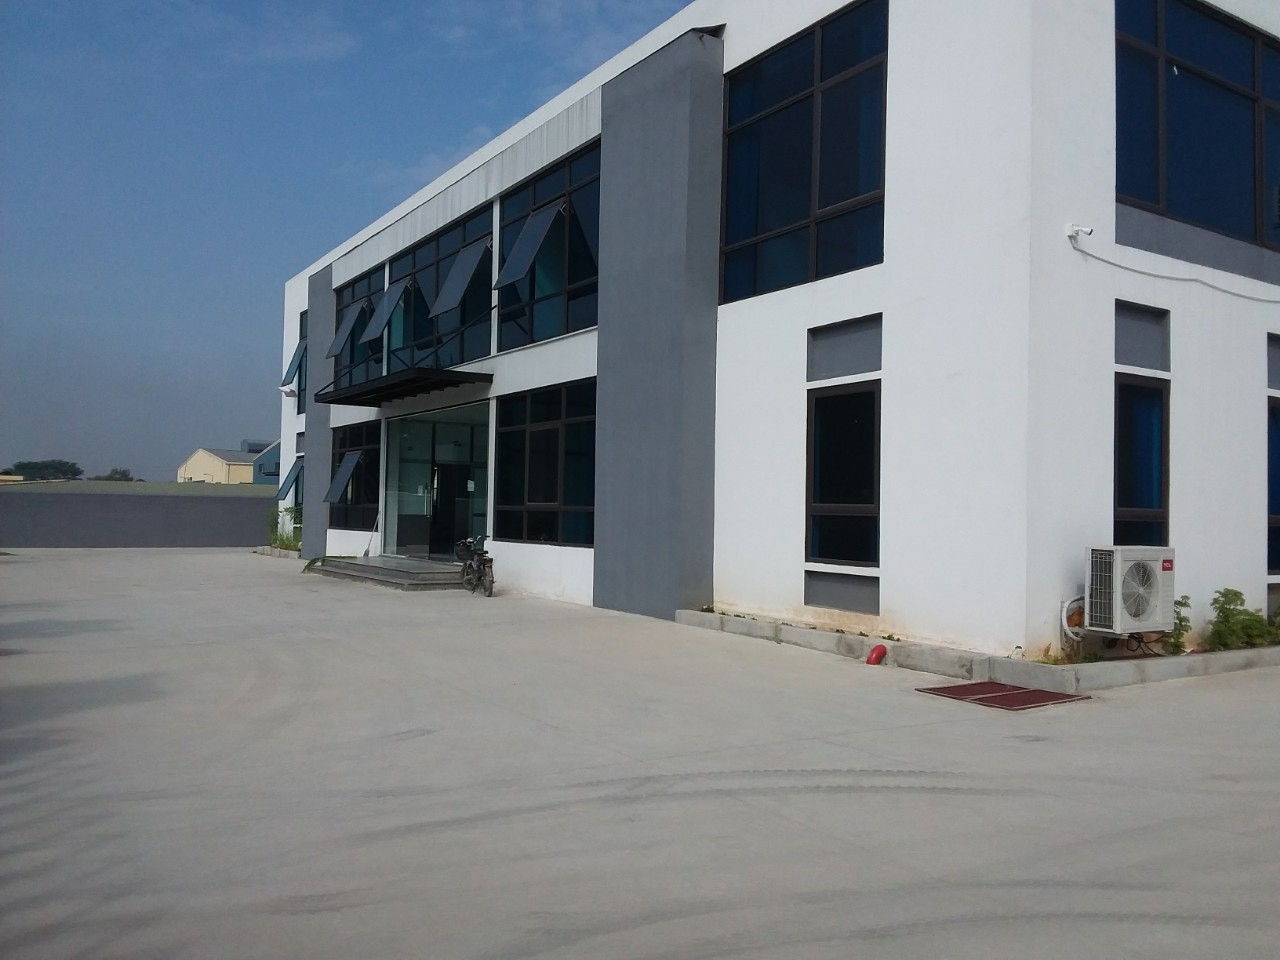 Cho thuê nhà xưởng mới trong và ngoài Khu CN Phố Nối A, Hưng Yên.DT đa dạng 1000m2-200.000m2 2